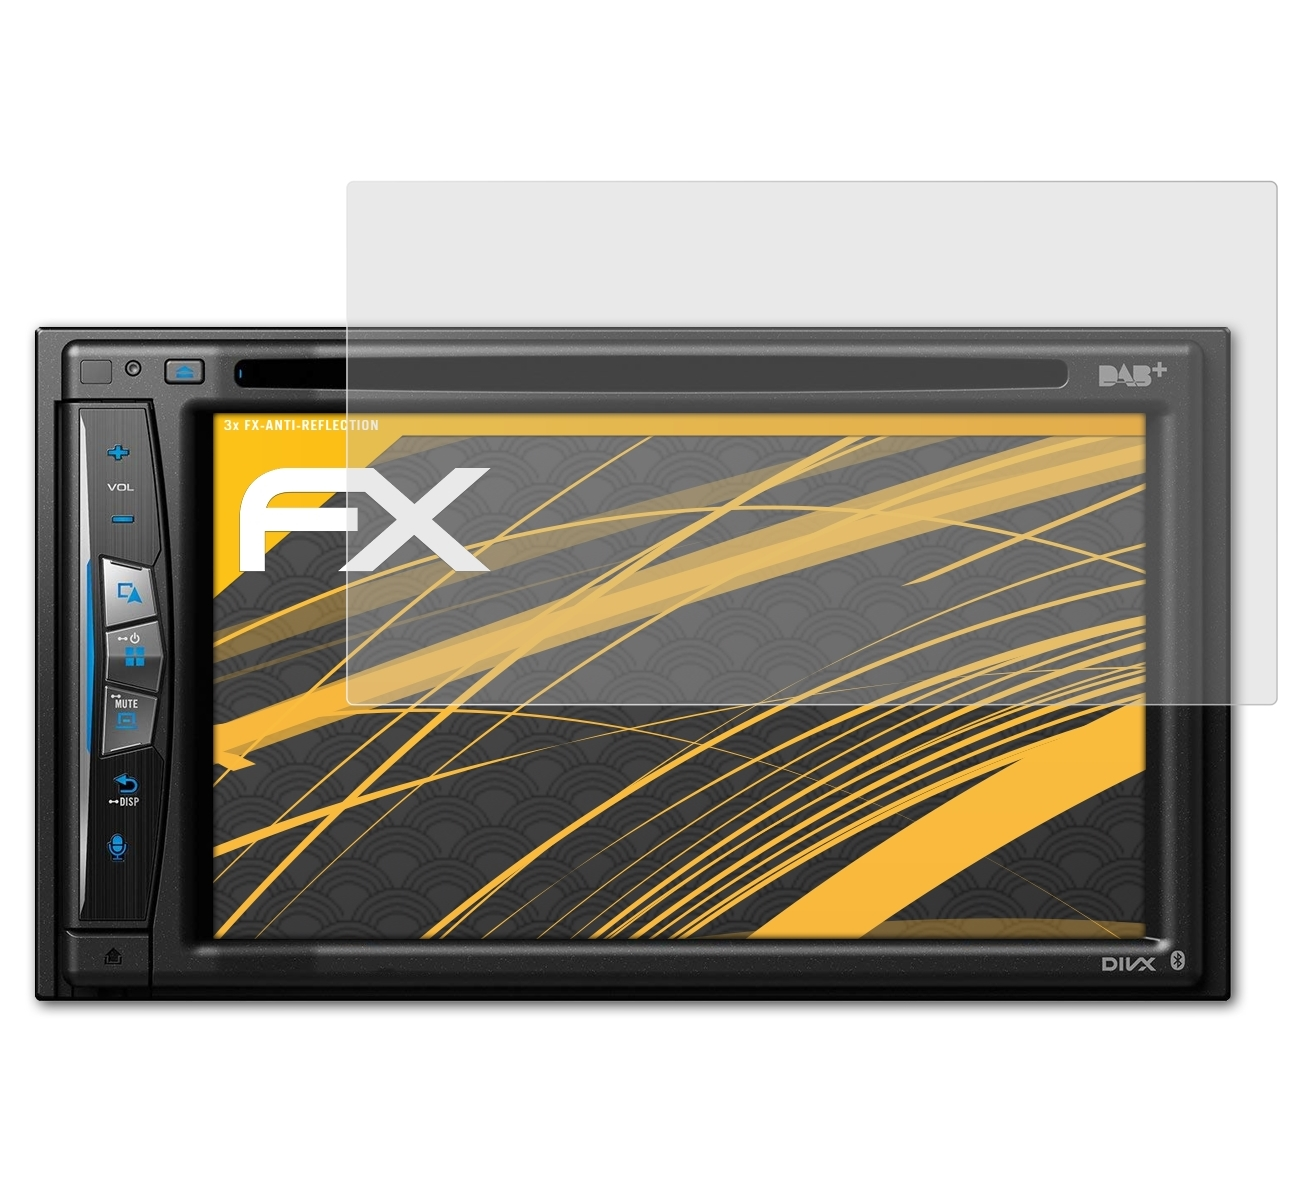 3x Avic-Z710DAB) Pioneer FX-Antireflex Displayschutz(für ATFOLIX